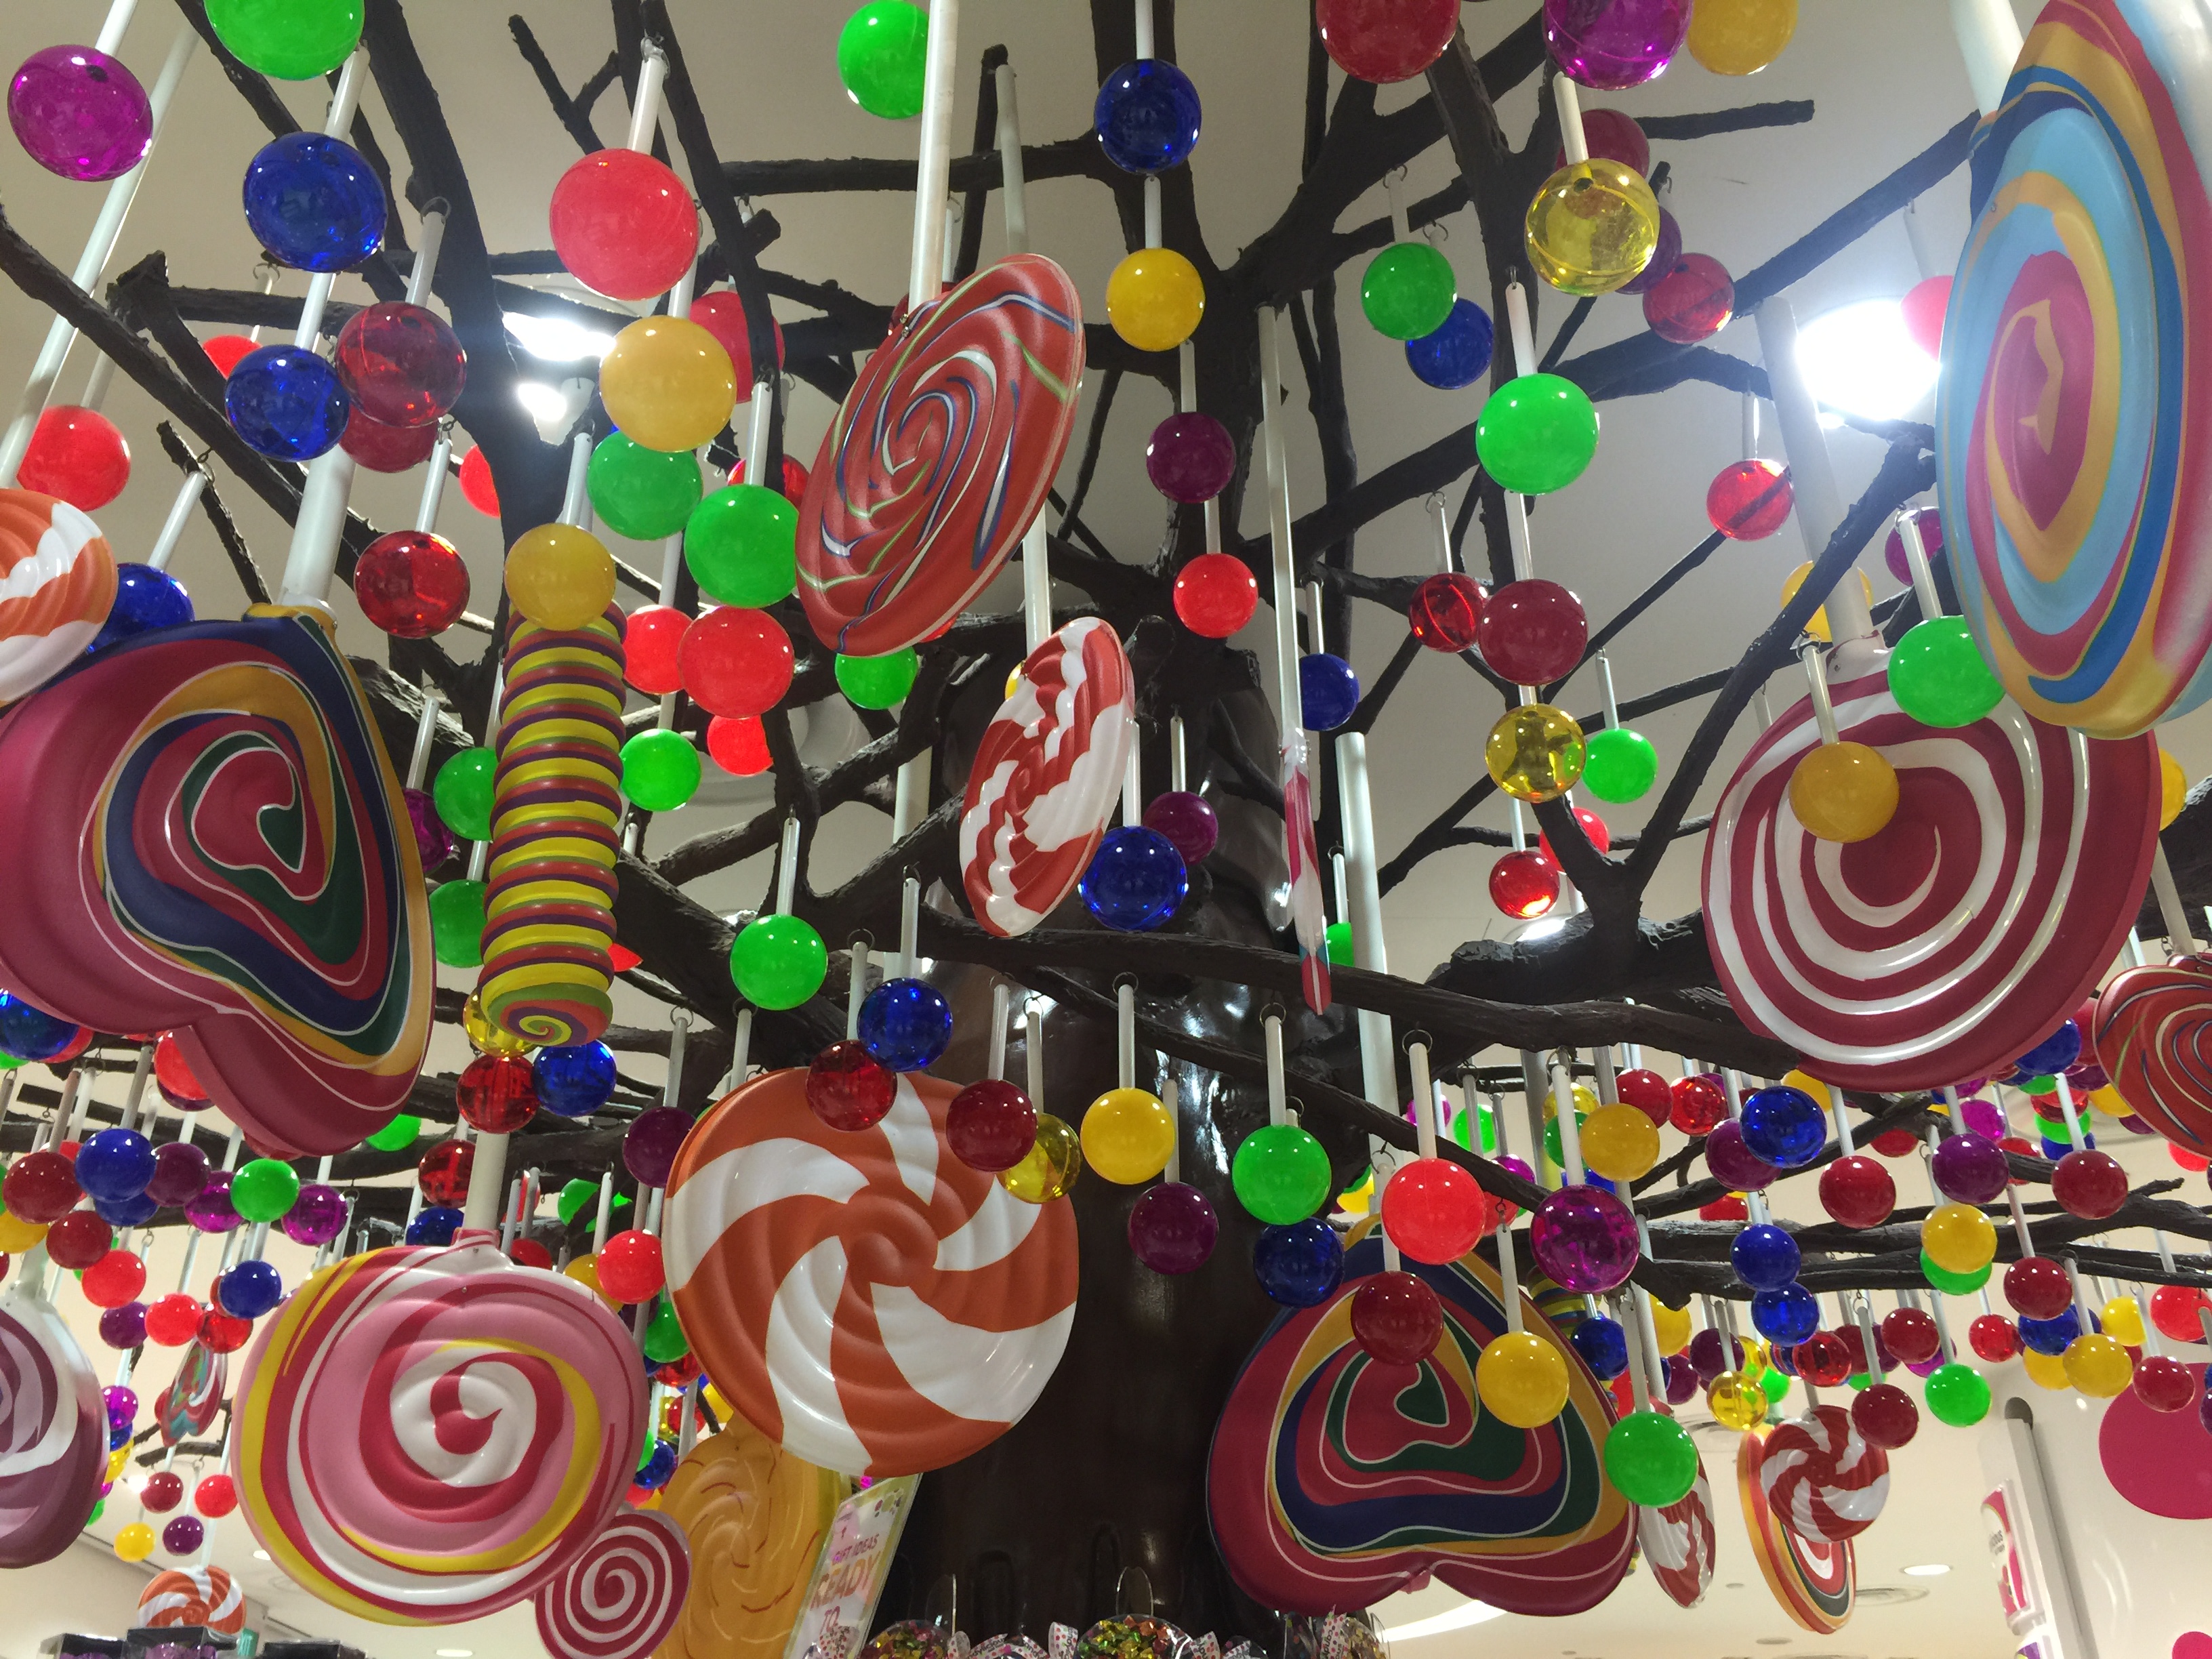 店内挂满了各色糖果的大型装饰物,还有mm造型可以合影拍照.